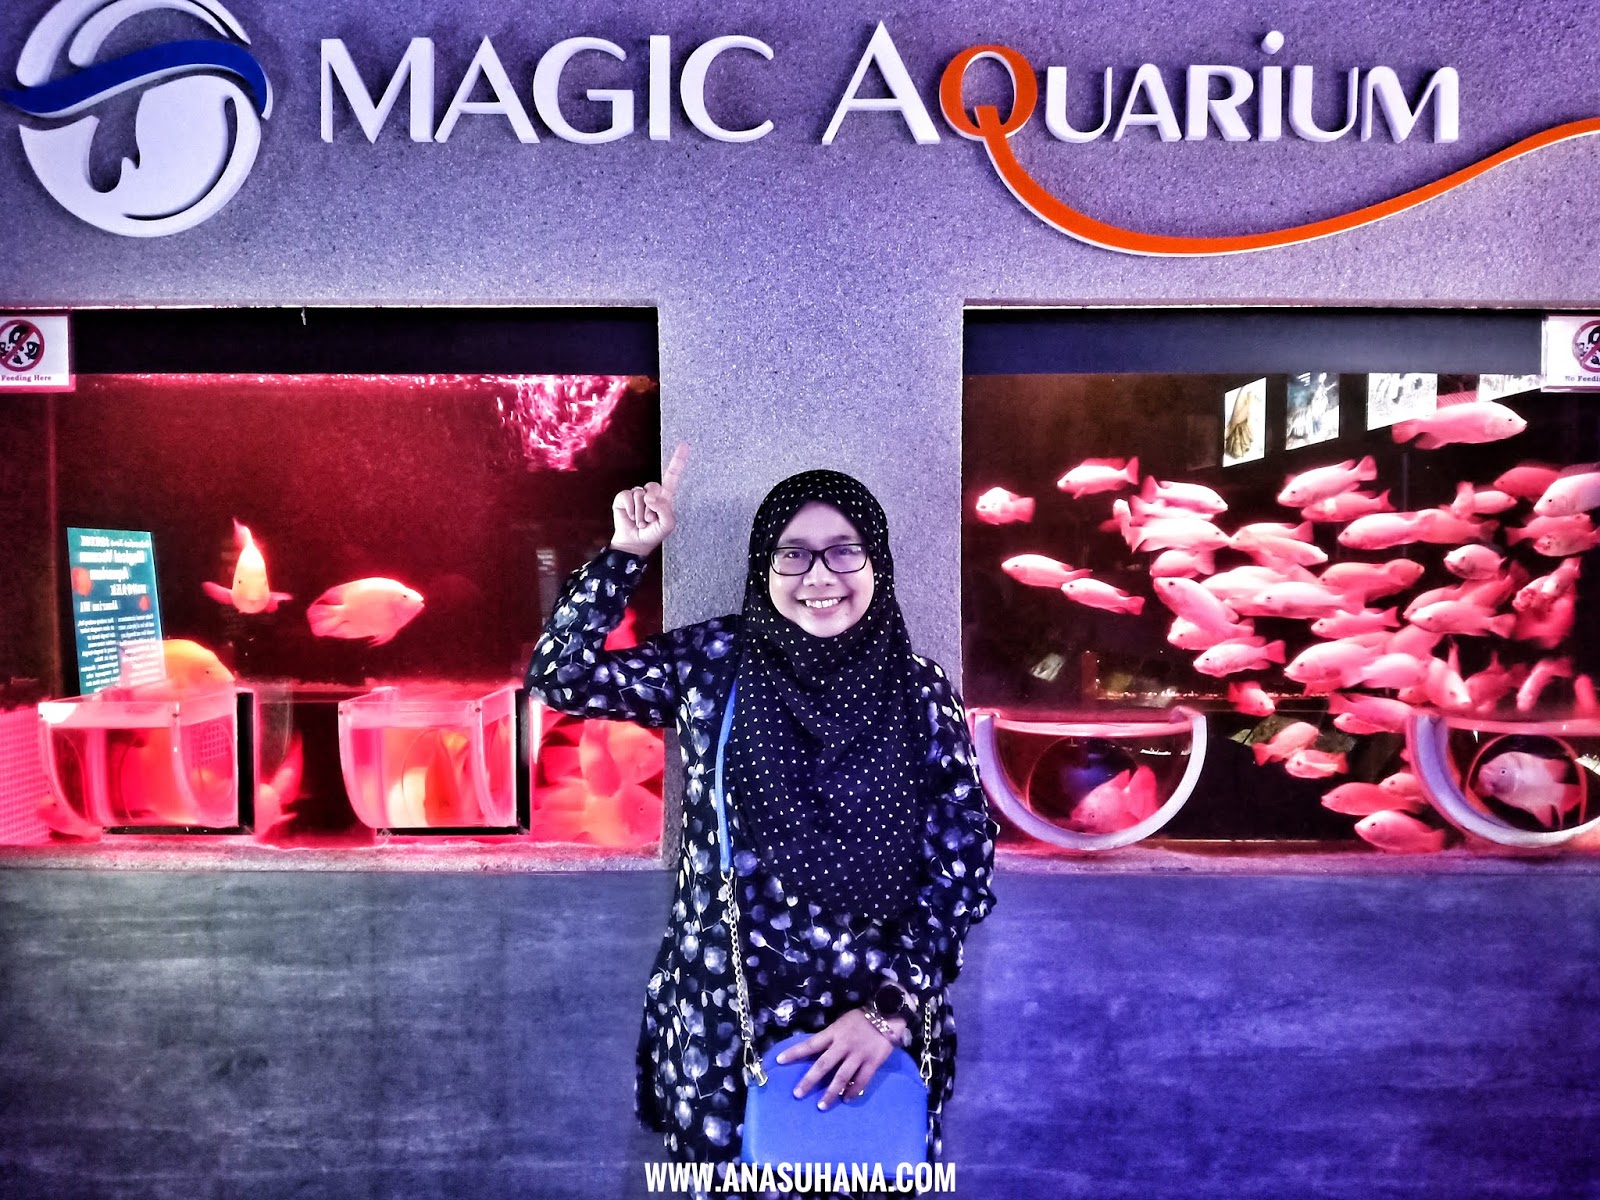 The Shore Oceanarium Melaka